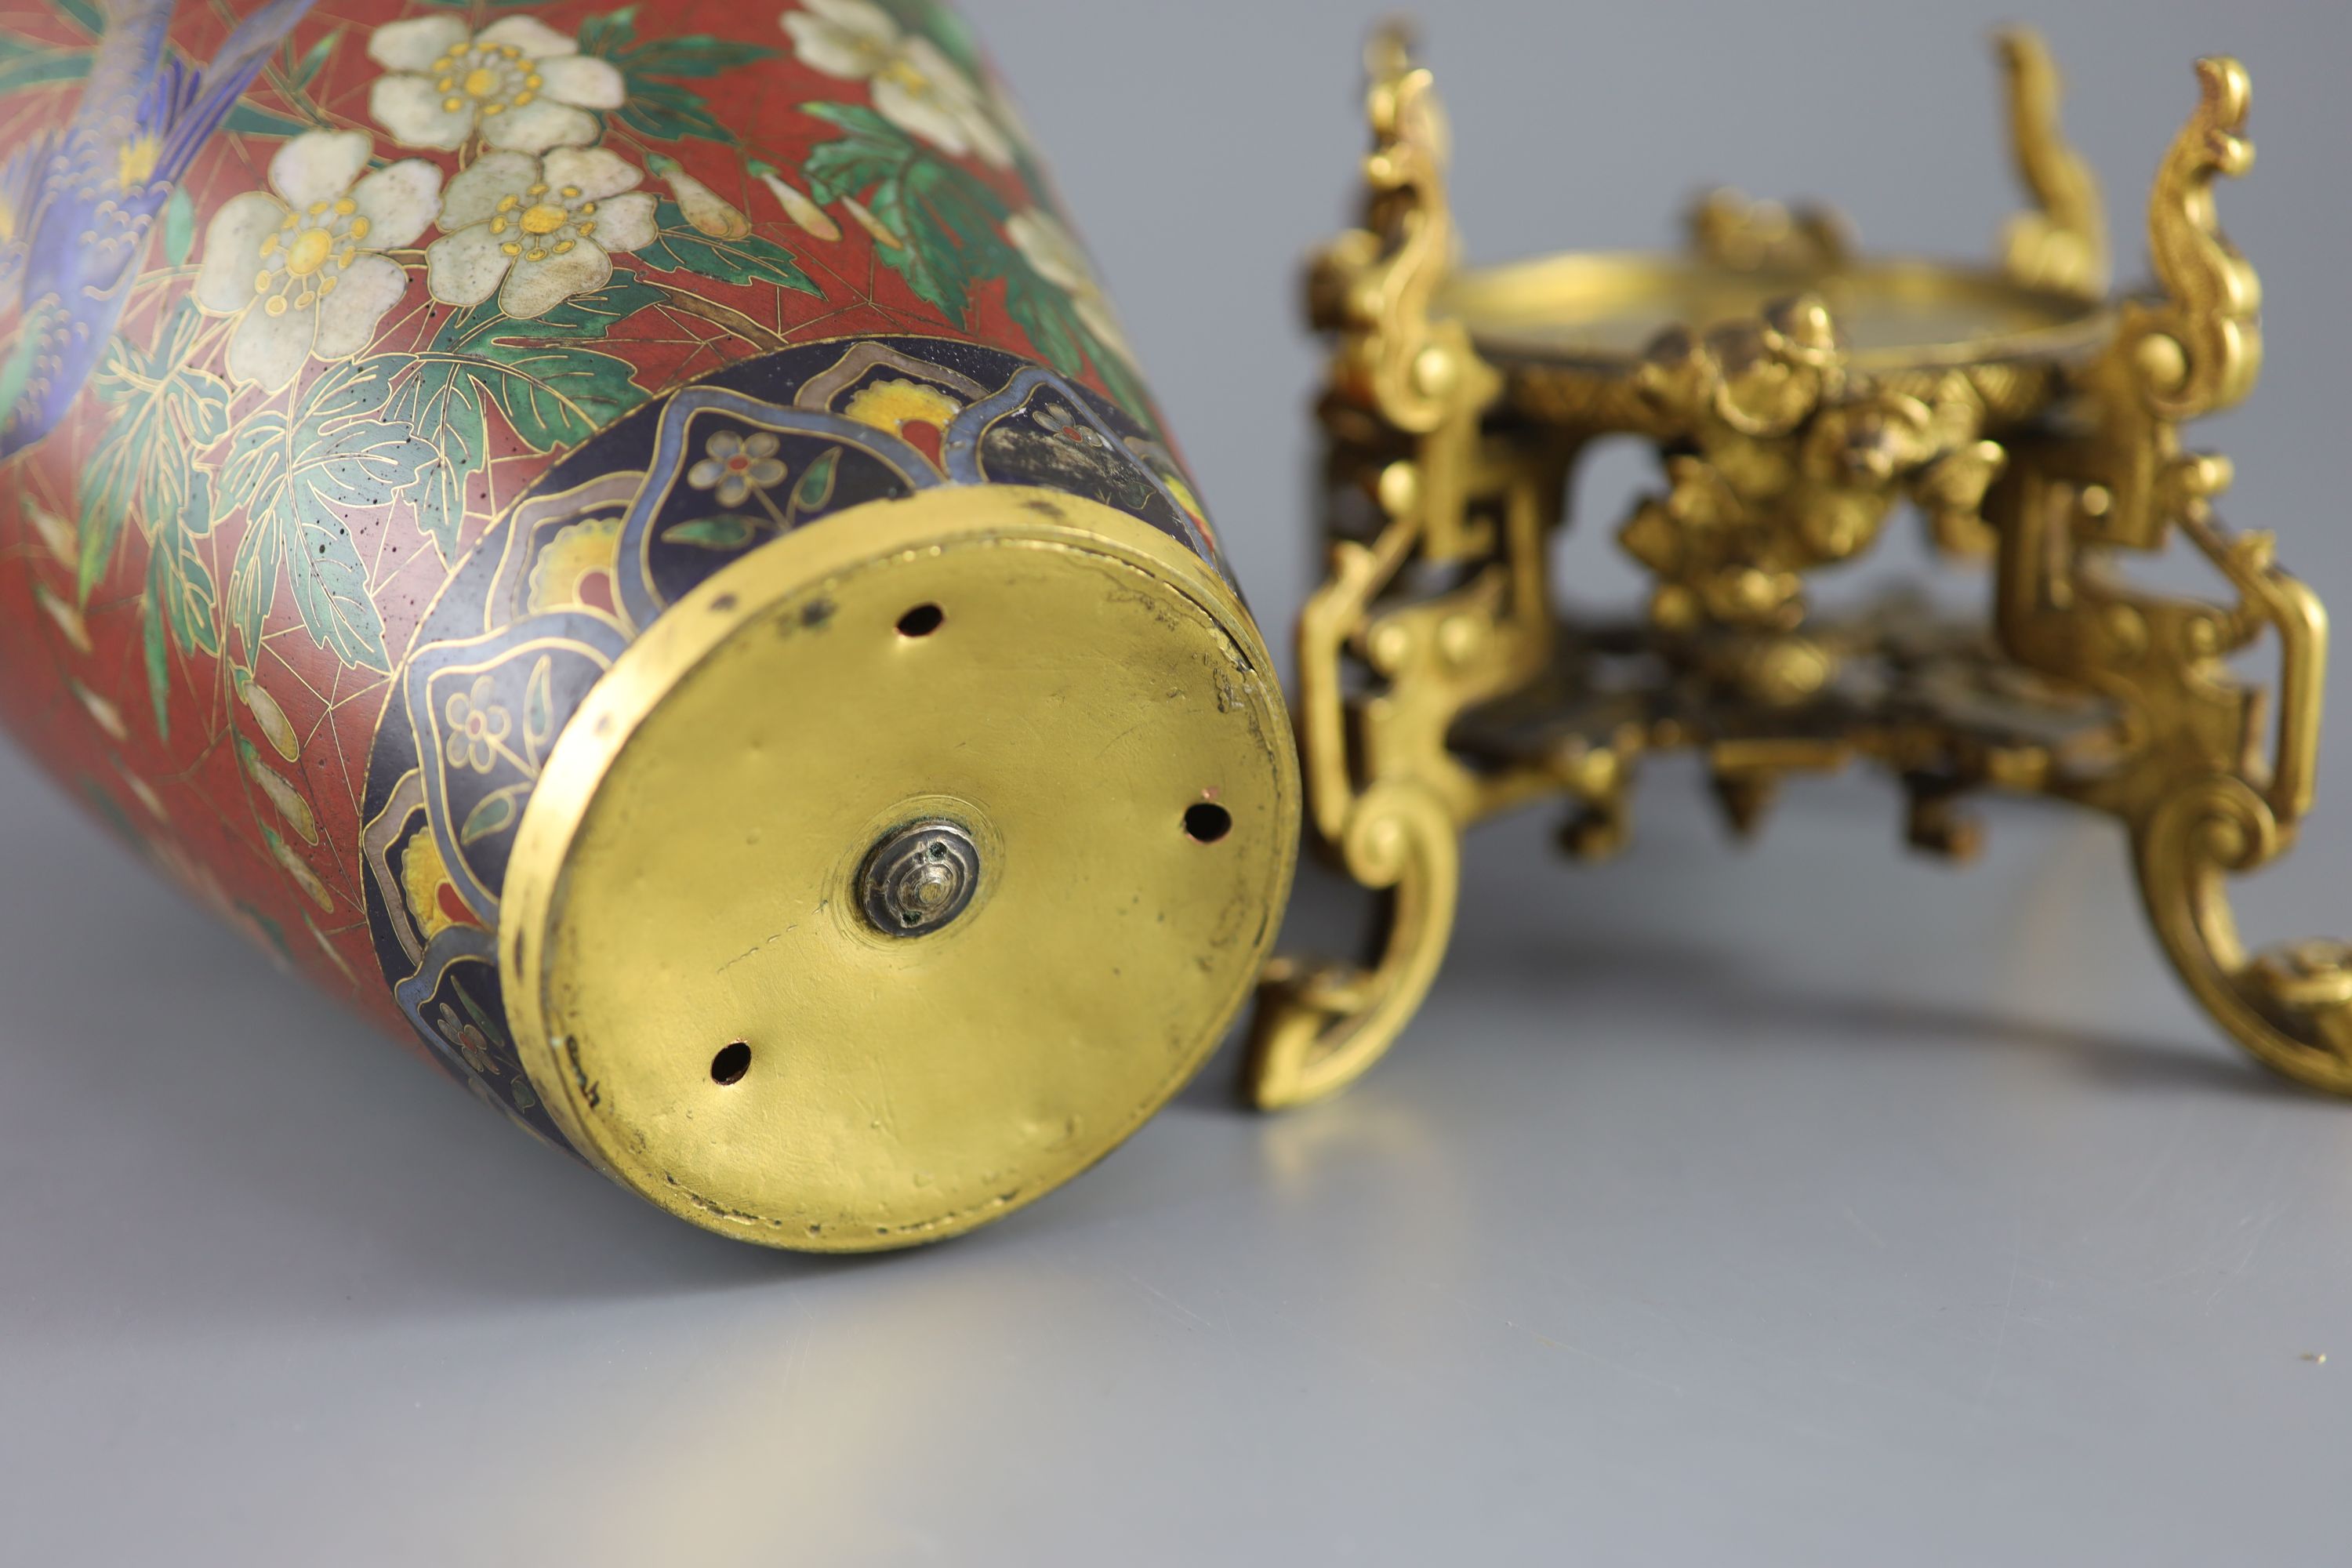 An Elkington & Co. Japonaise ormolu mounted 'cloisonne' enamel vase, c.1874, 32cm high, area of restoration